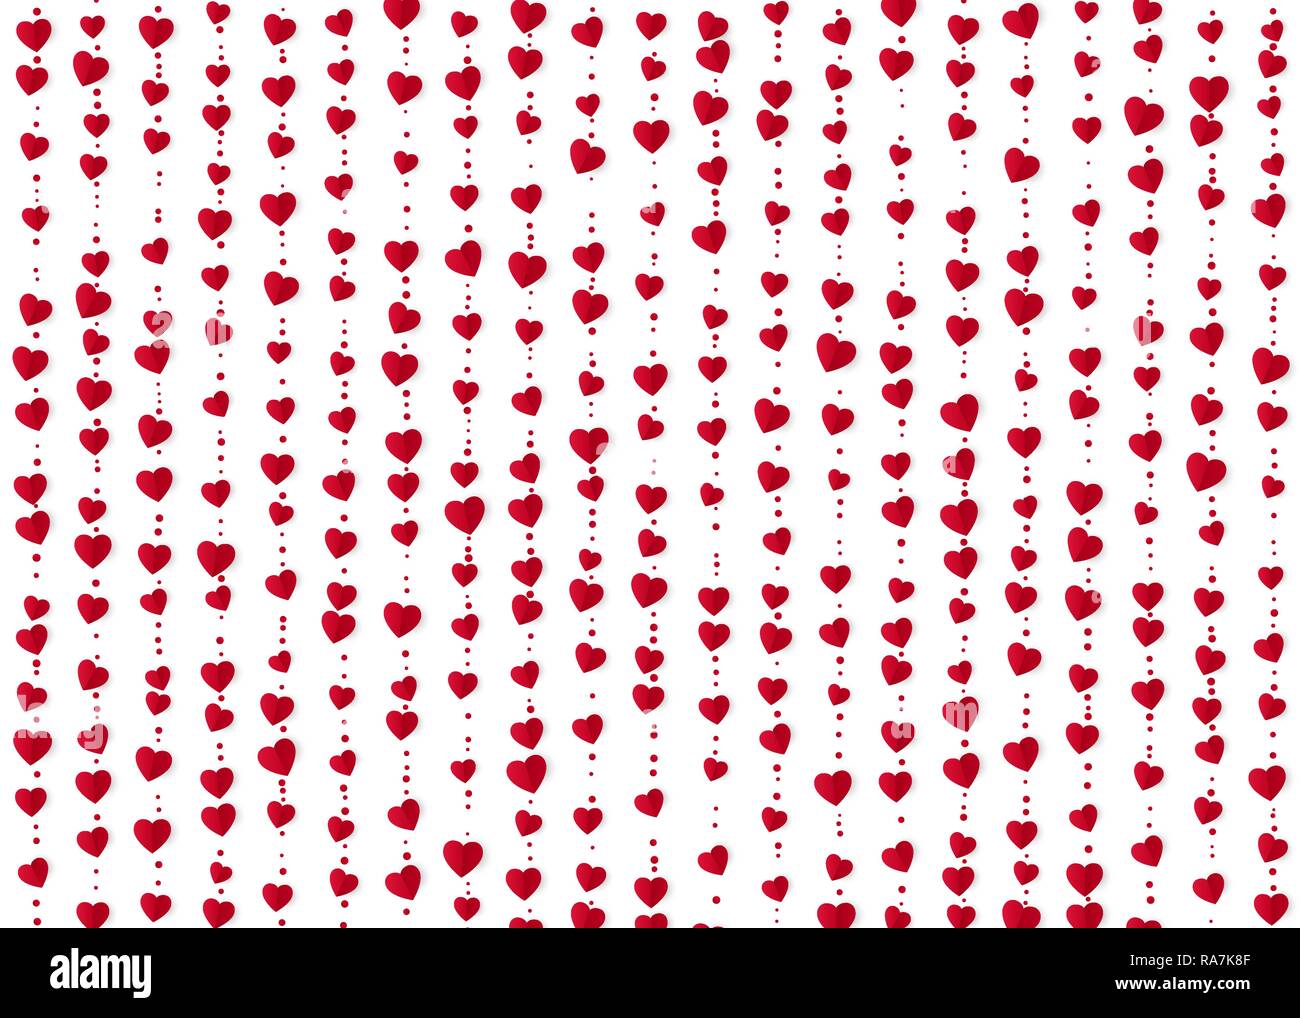 Rote Herzen Girlanden. Valentines Tag romantische Hintergrund. Geschenkpapier Hintergrund. Vector Illustration Stock Vektor